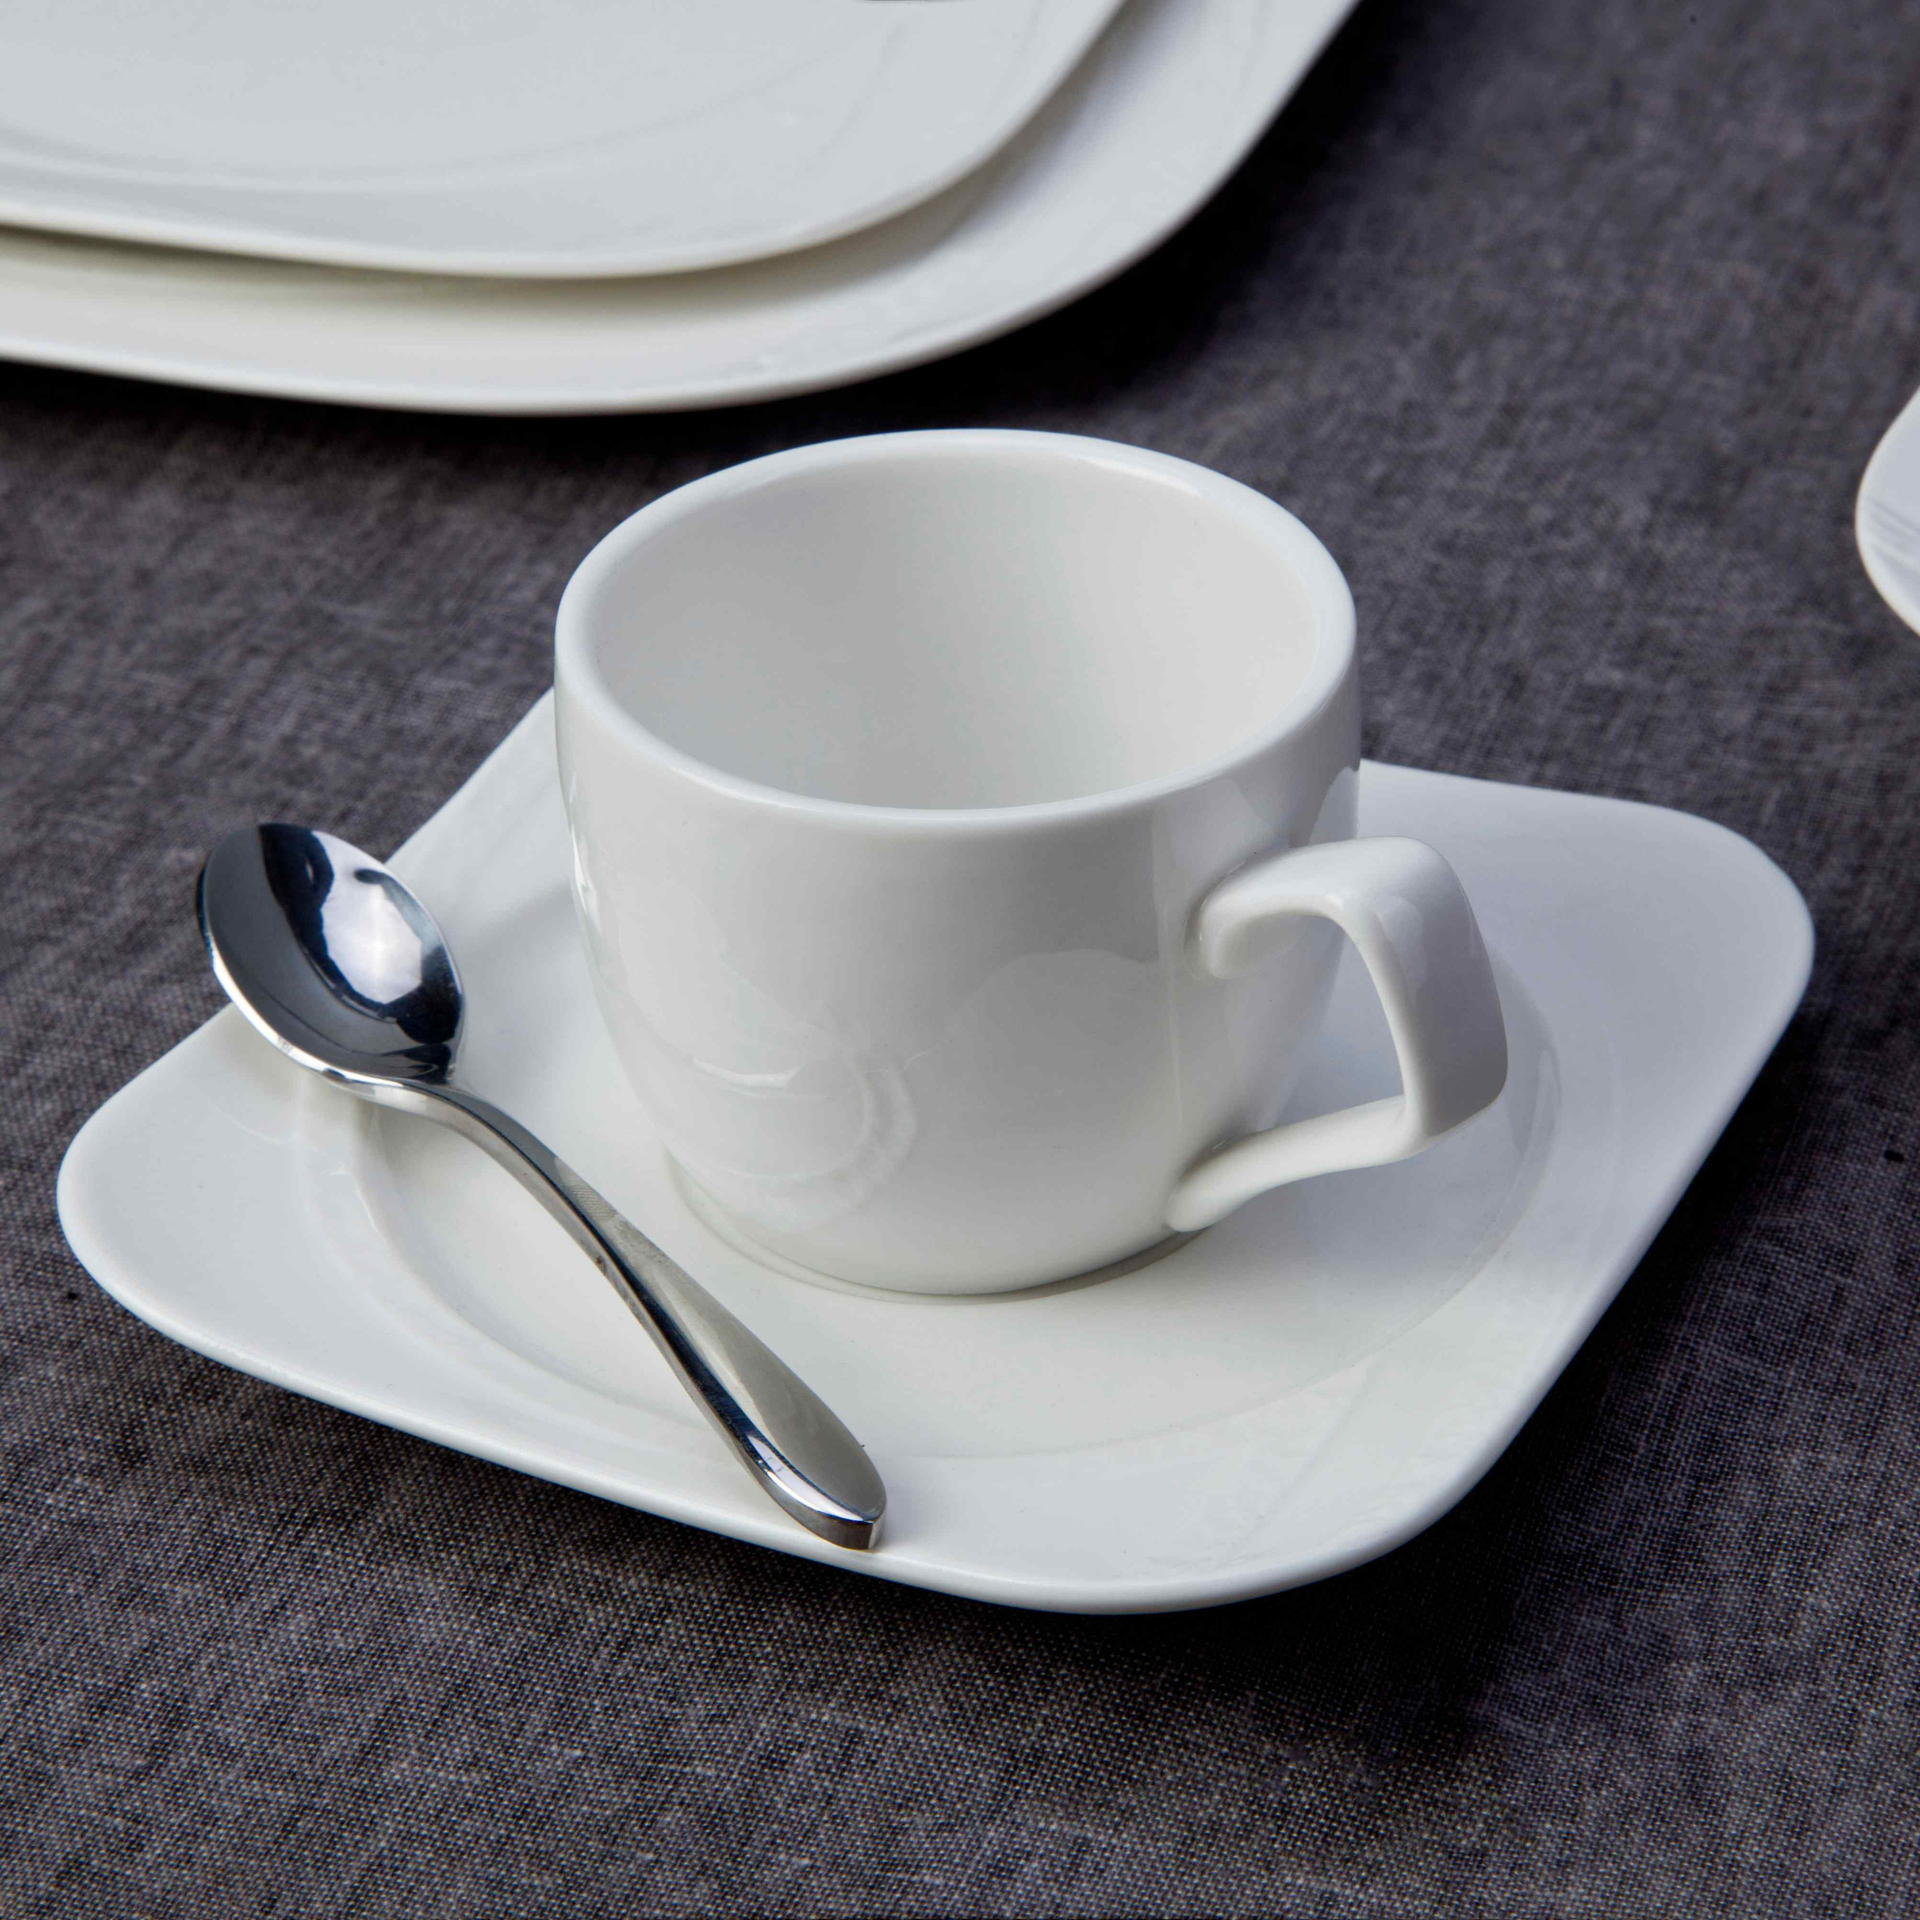 9 Piece Simply white ceramic dinnerware set - TW20